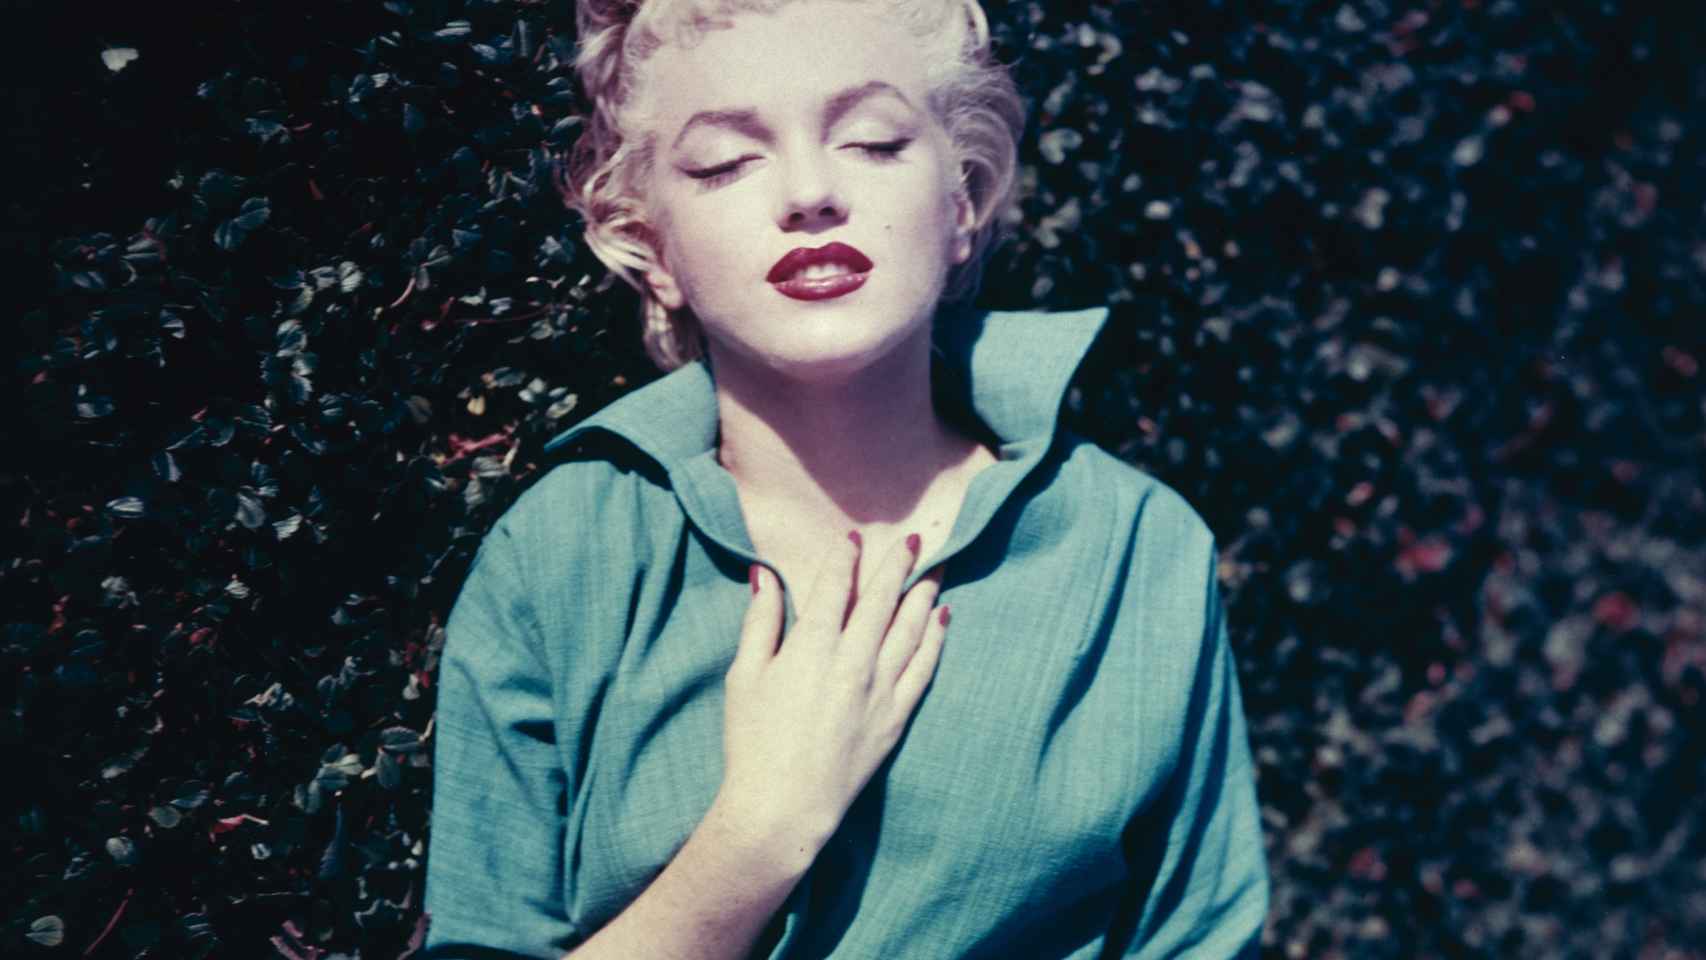 Icono de sensualidad, Monroe fue una de las mejores prescriptoras del maquillaje. | Foto: Getty Images.